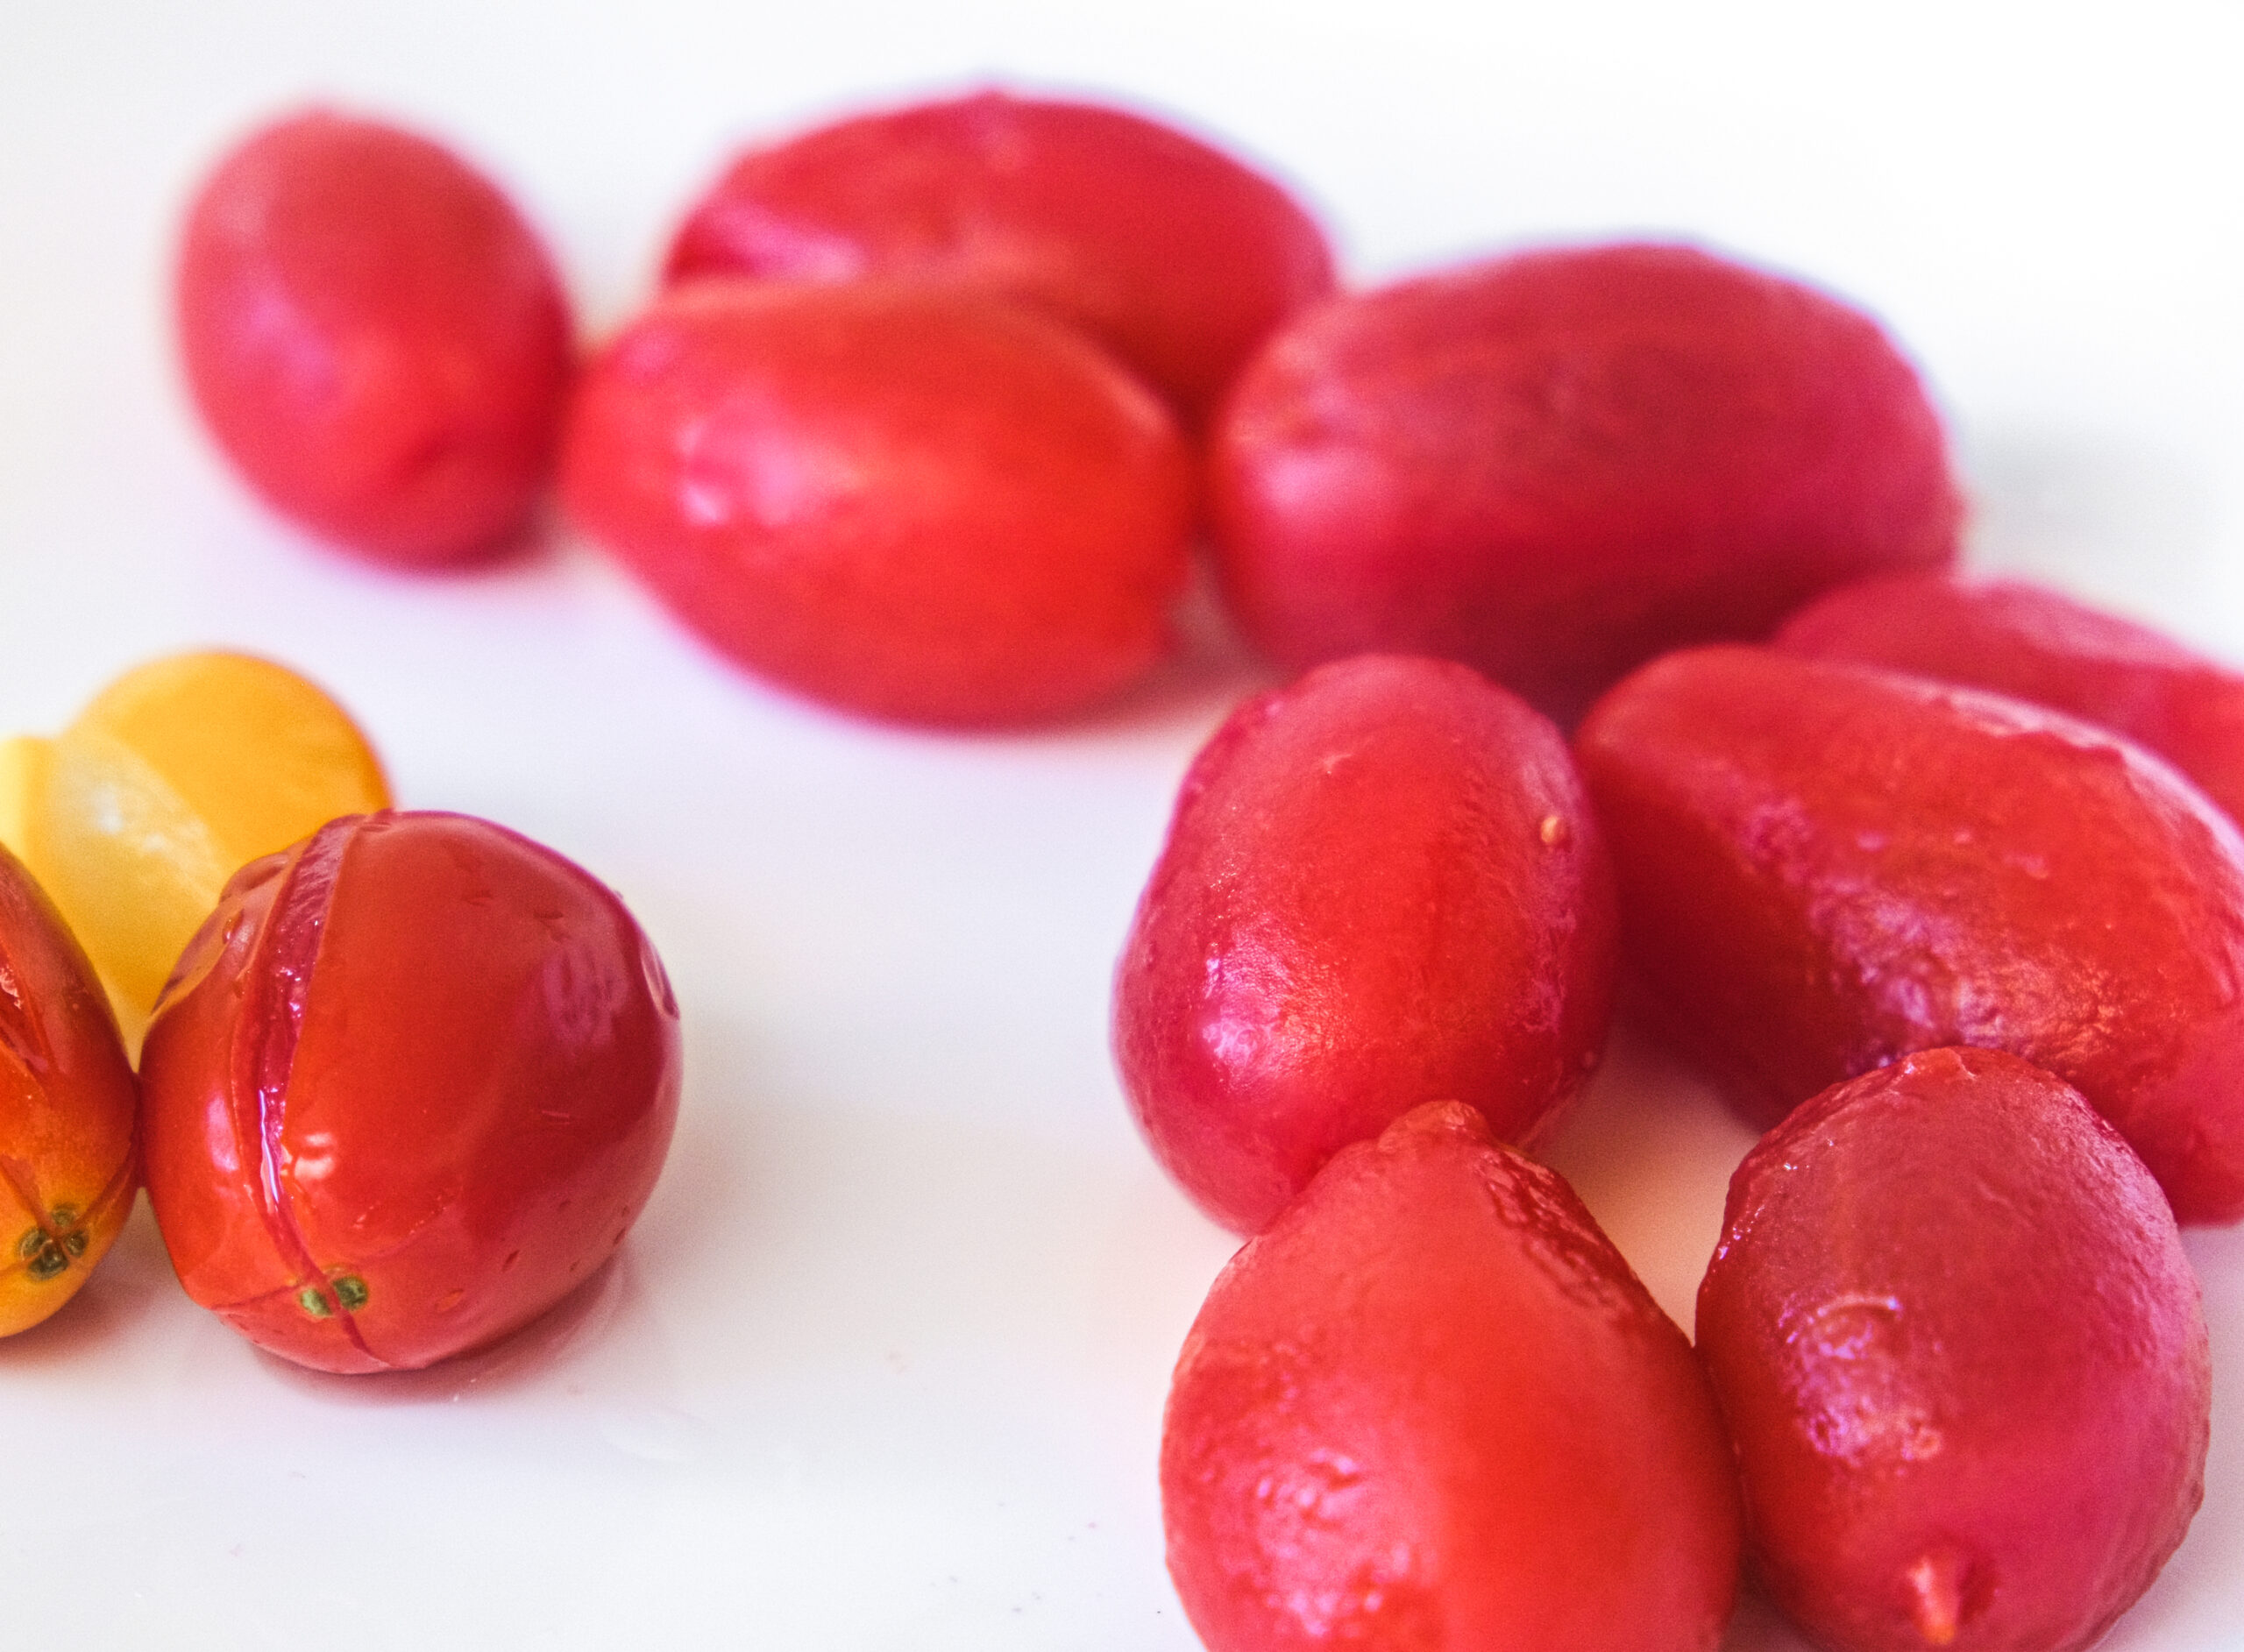 Skinned Cherry Tomatoes